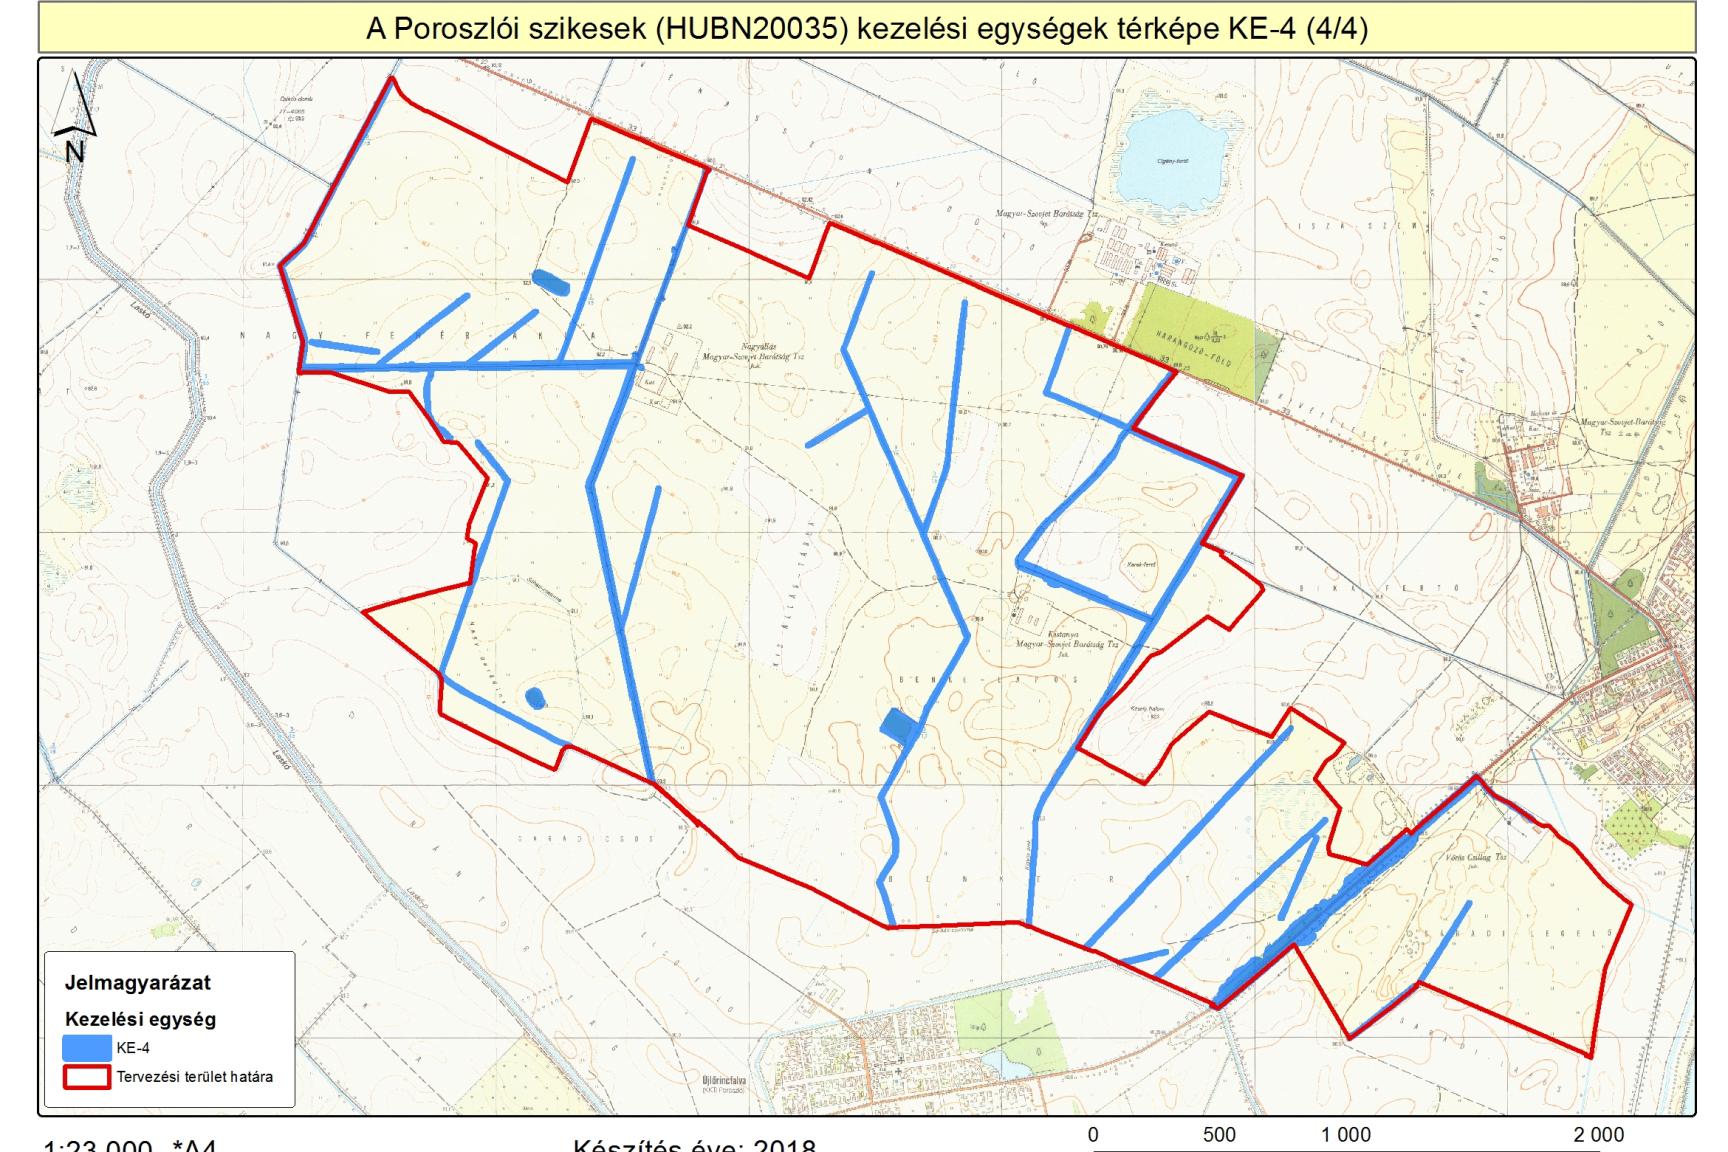 A tervezési terület KE4 kezelési egységét lehatároló térkép (2014)